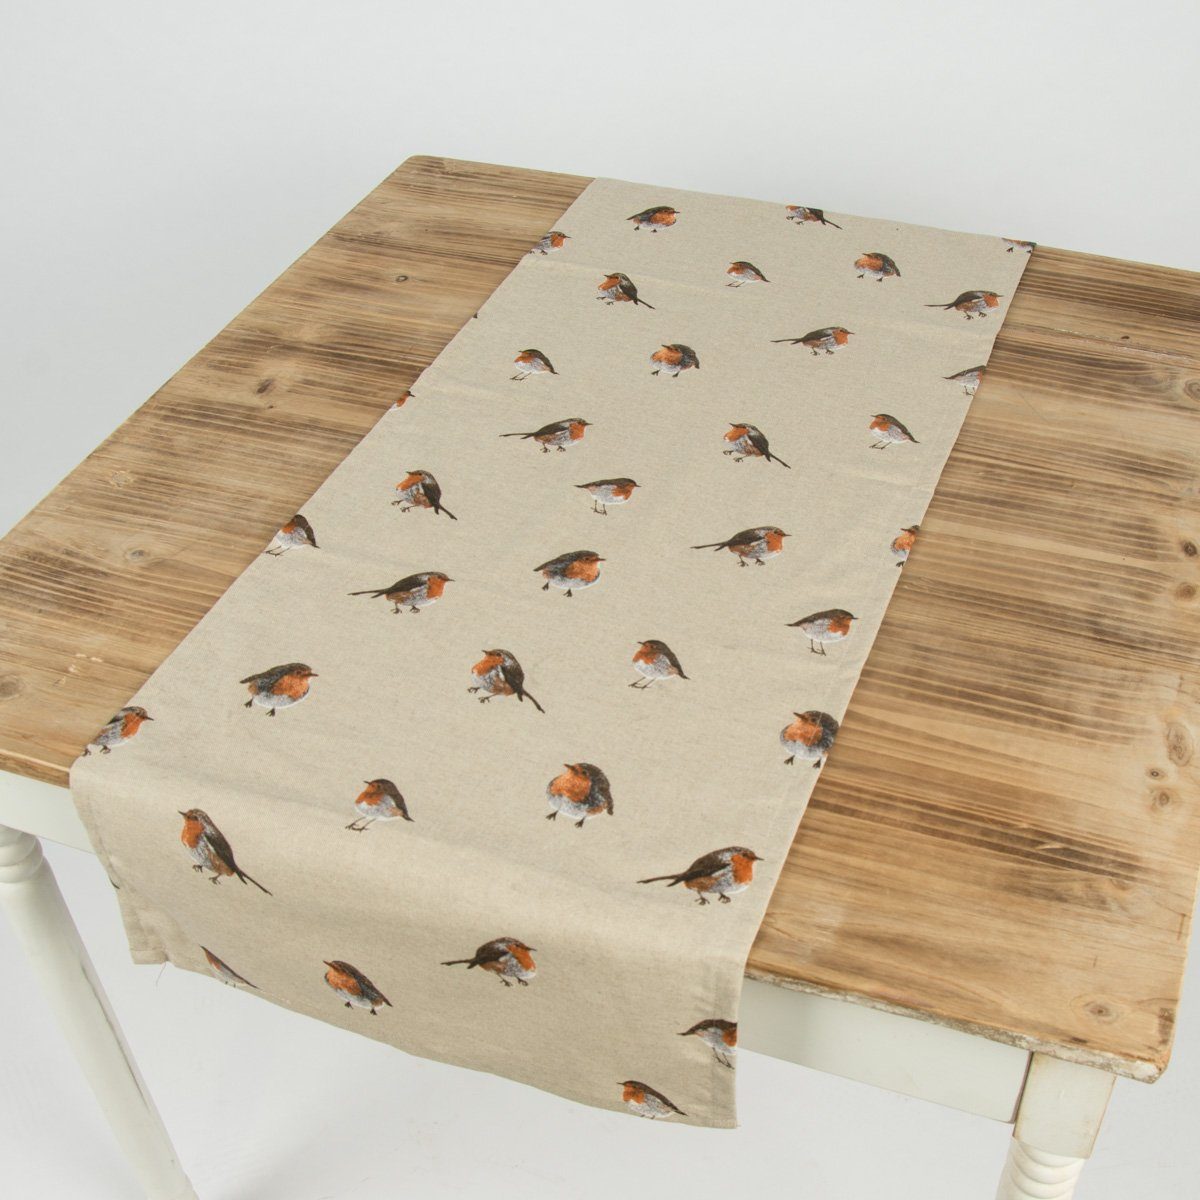 SCHÖNER LEBEN. Tischläufer Schöner Leben Rotkehlchen Vogel 40x160cm, braun natur Tischläufer handmade